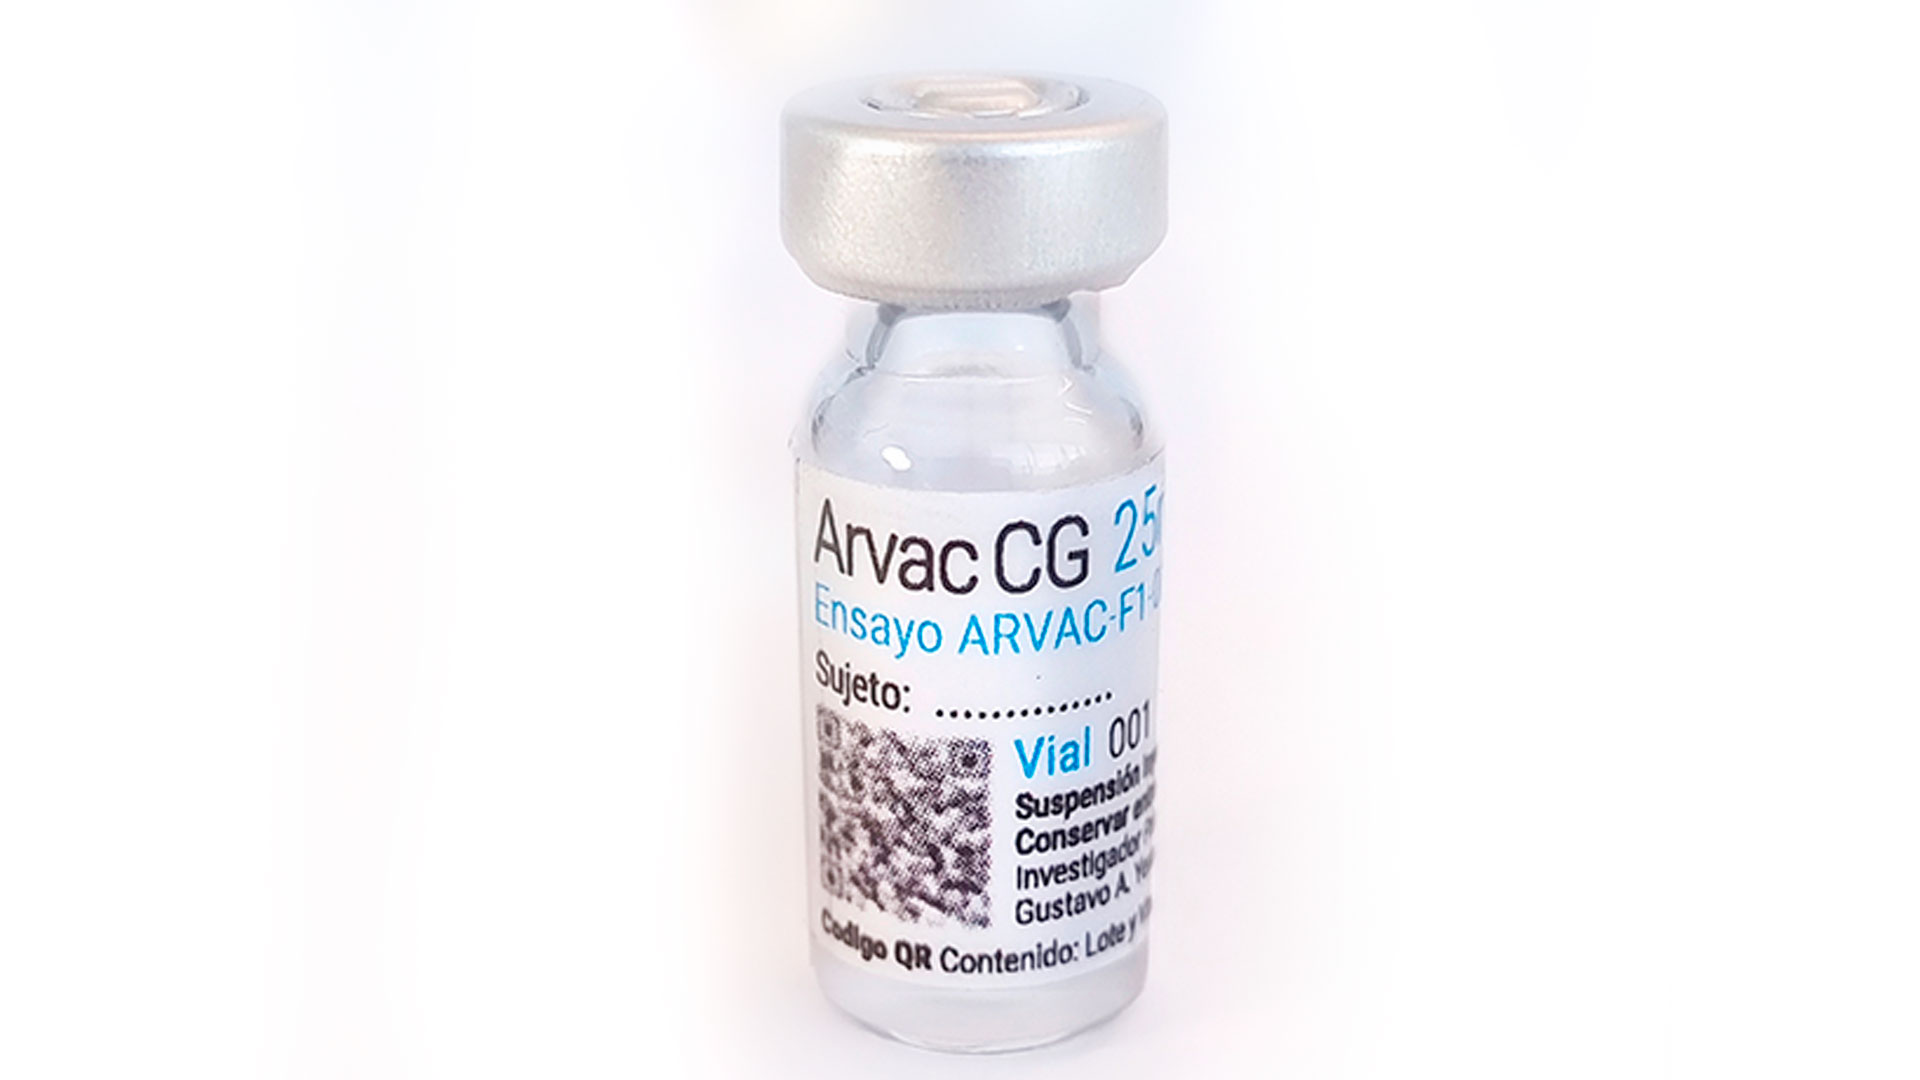 Le vaccin bivalent argentin contre le COVID, ARVAC Cecilia Grierson, entre en Phase II/III pour être approuvé par l'ANMAT courant 2023